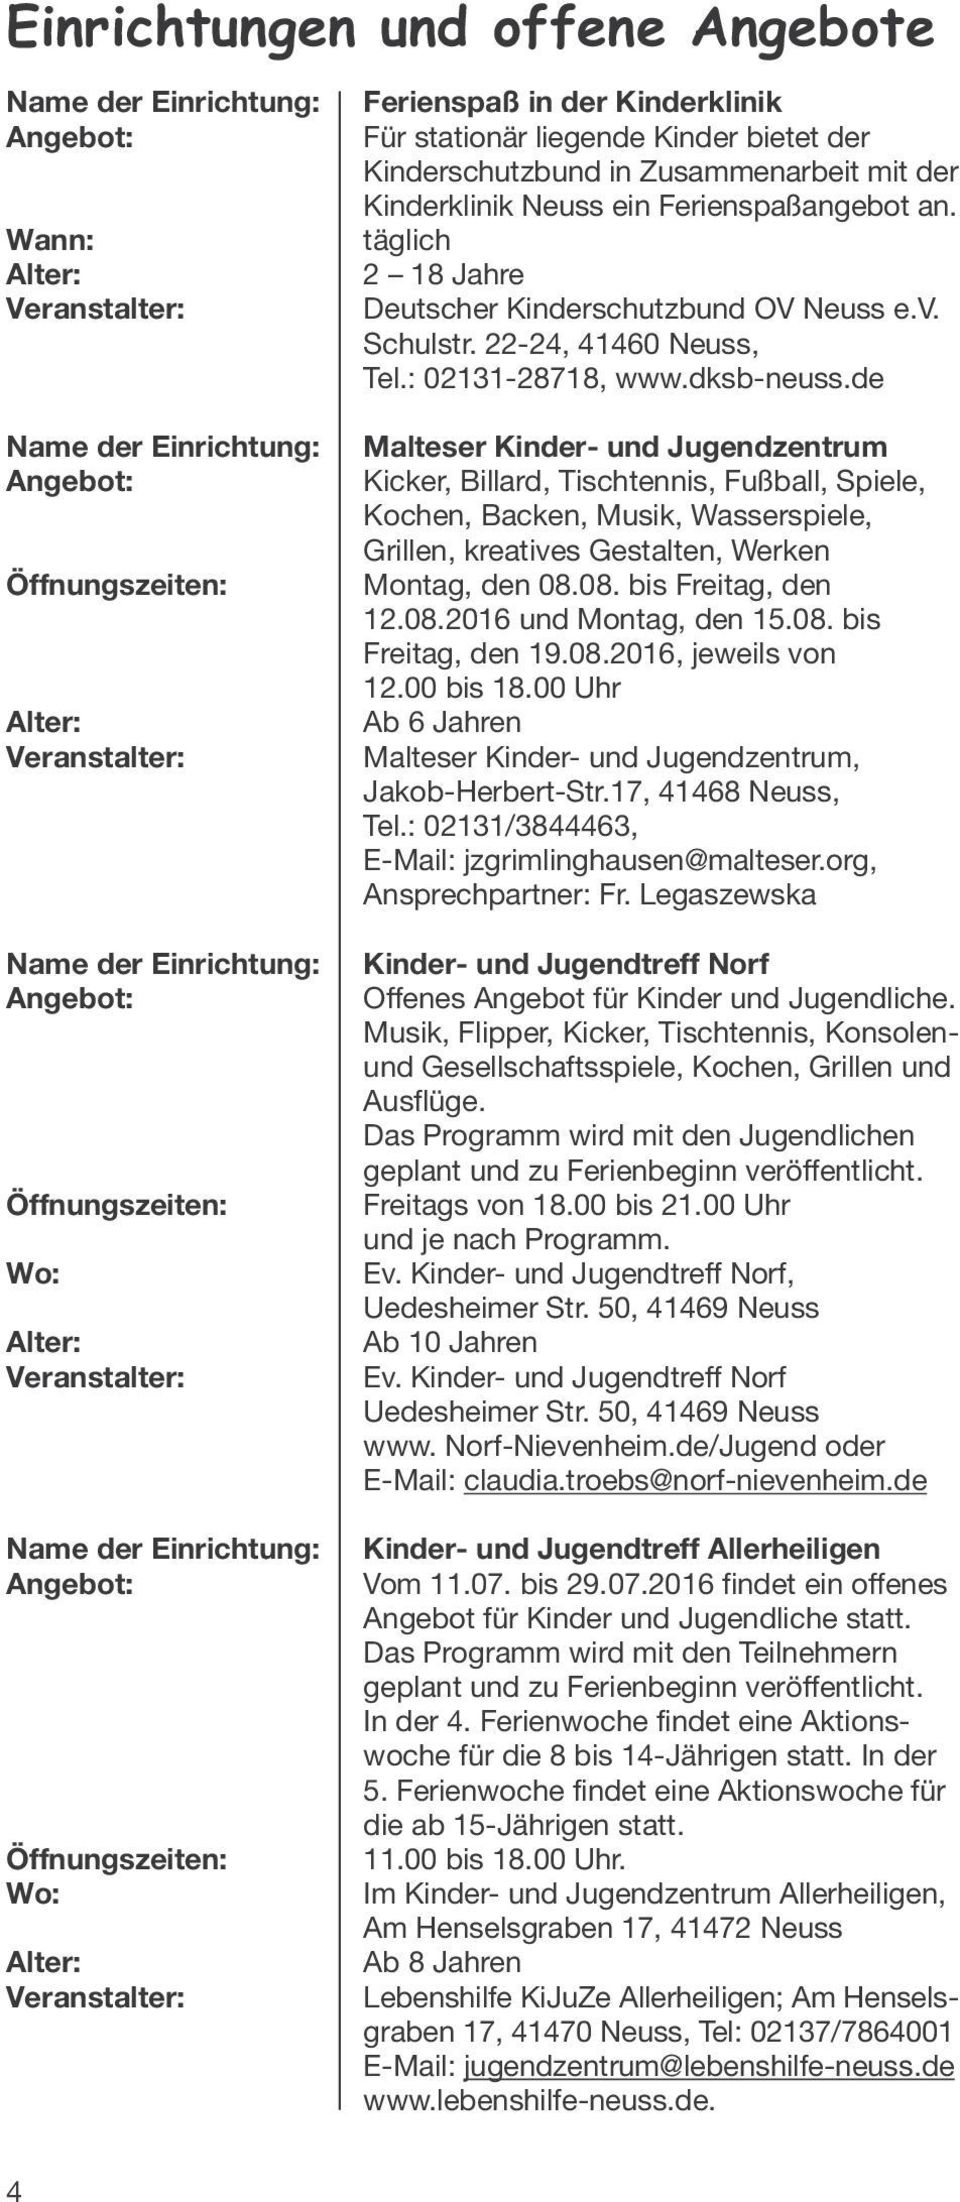 täglich 2 18 Jahre Deutscher Kinderschutzbund OV Neuss e.v. Schulstr. 22-24, 41460 Neuss, Tel.: 02131-28718, www.dksb-neuss.